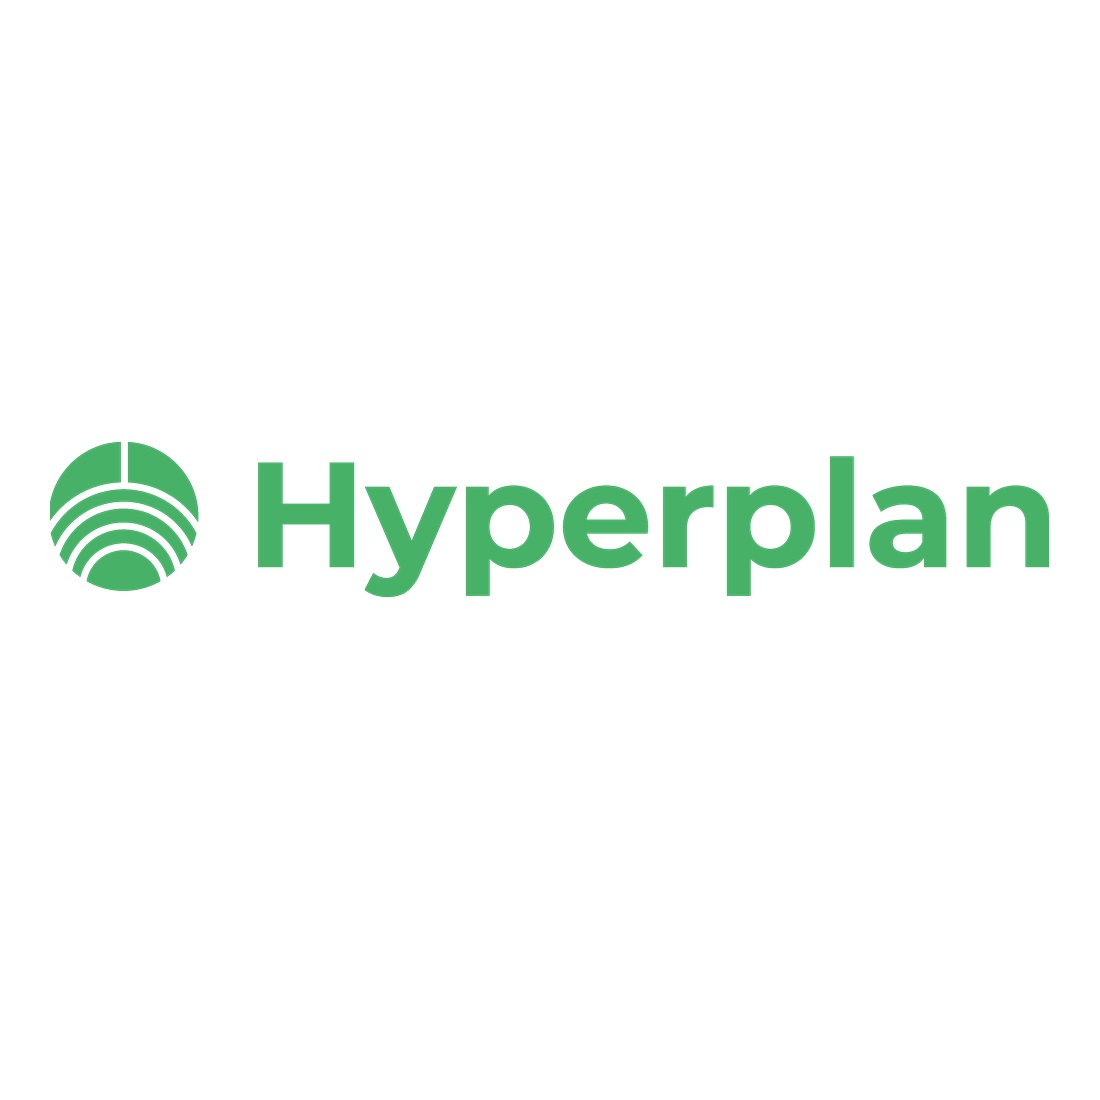 Hyperplan